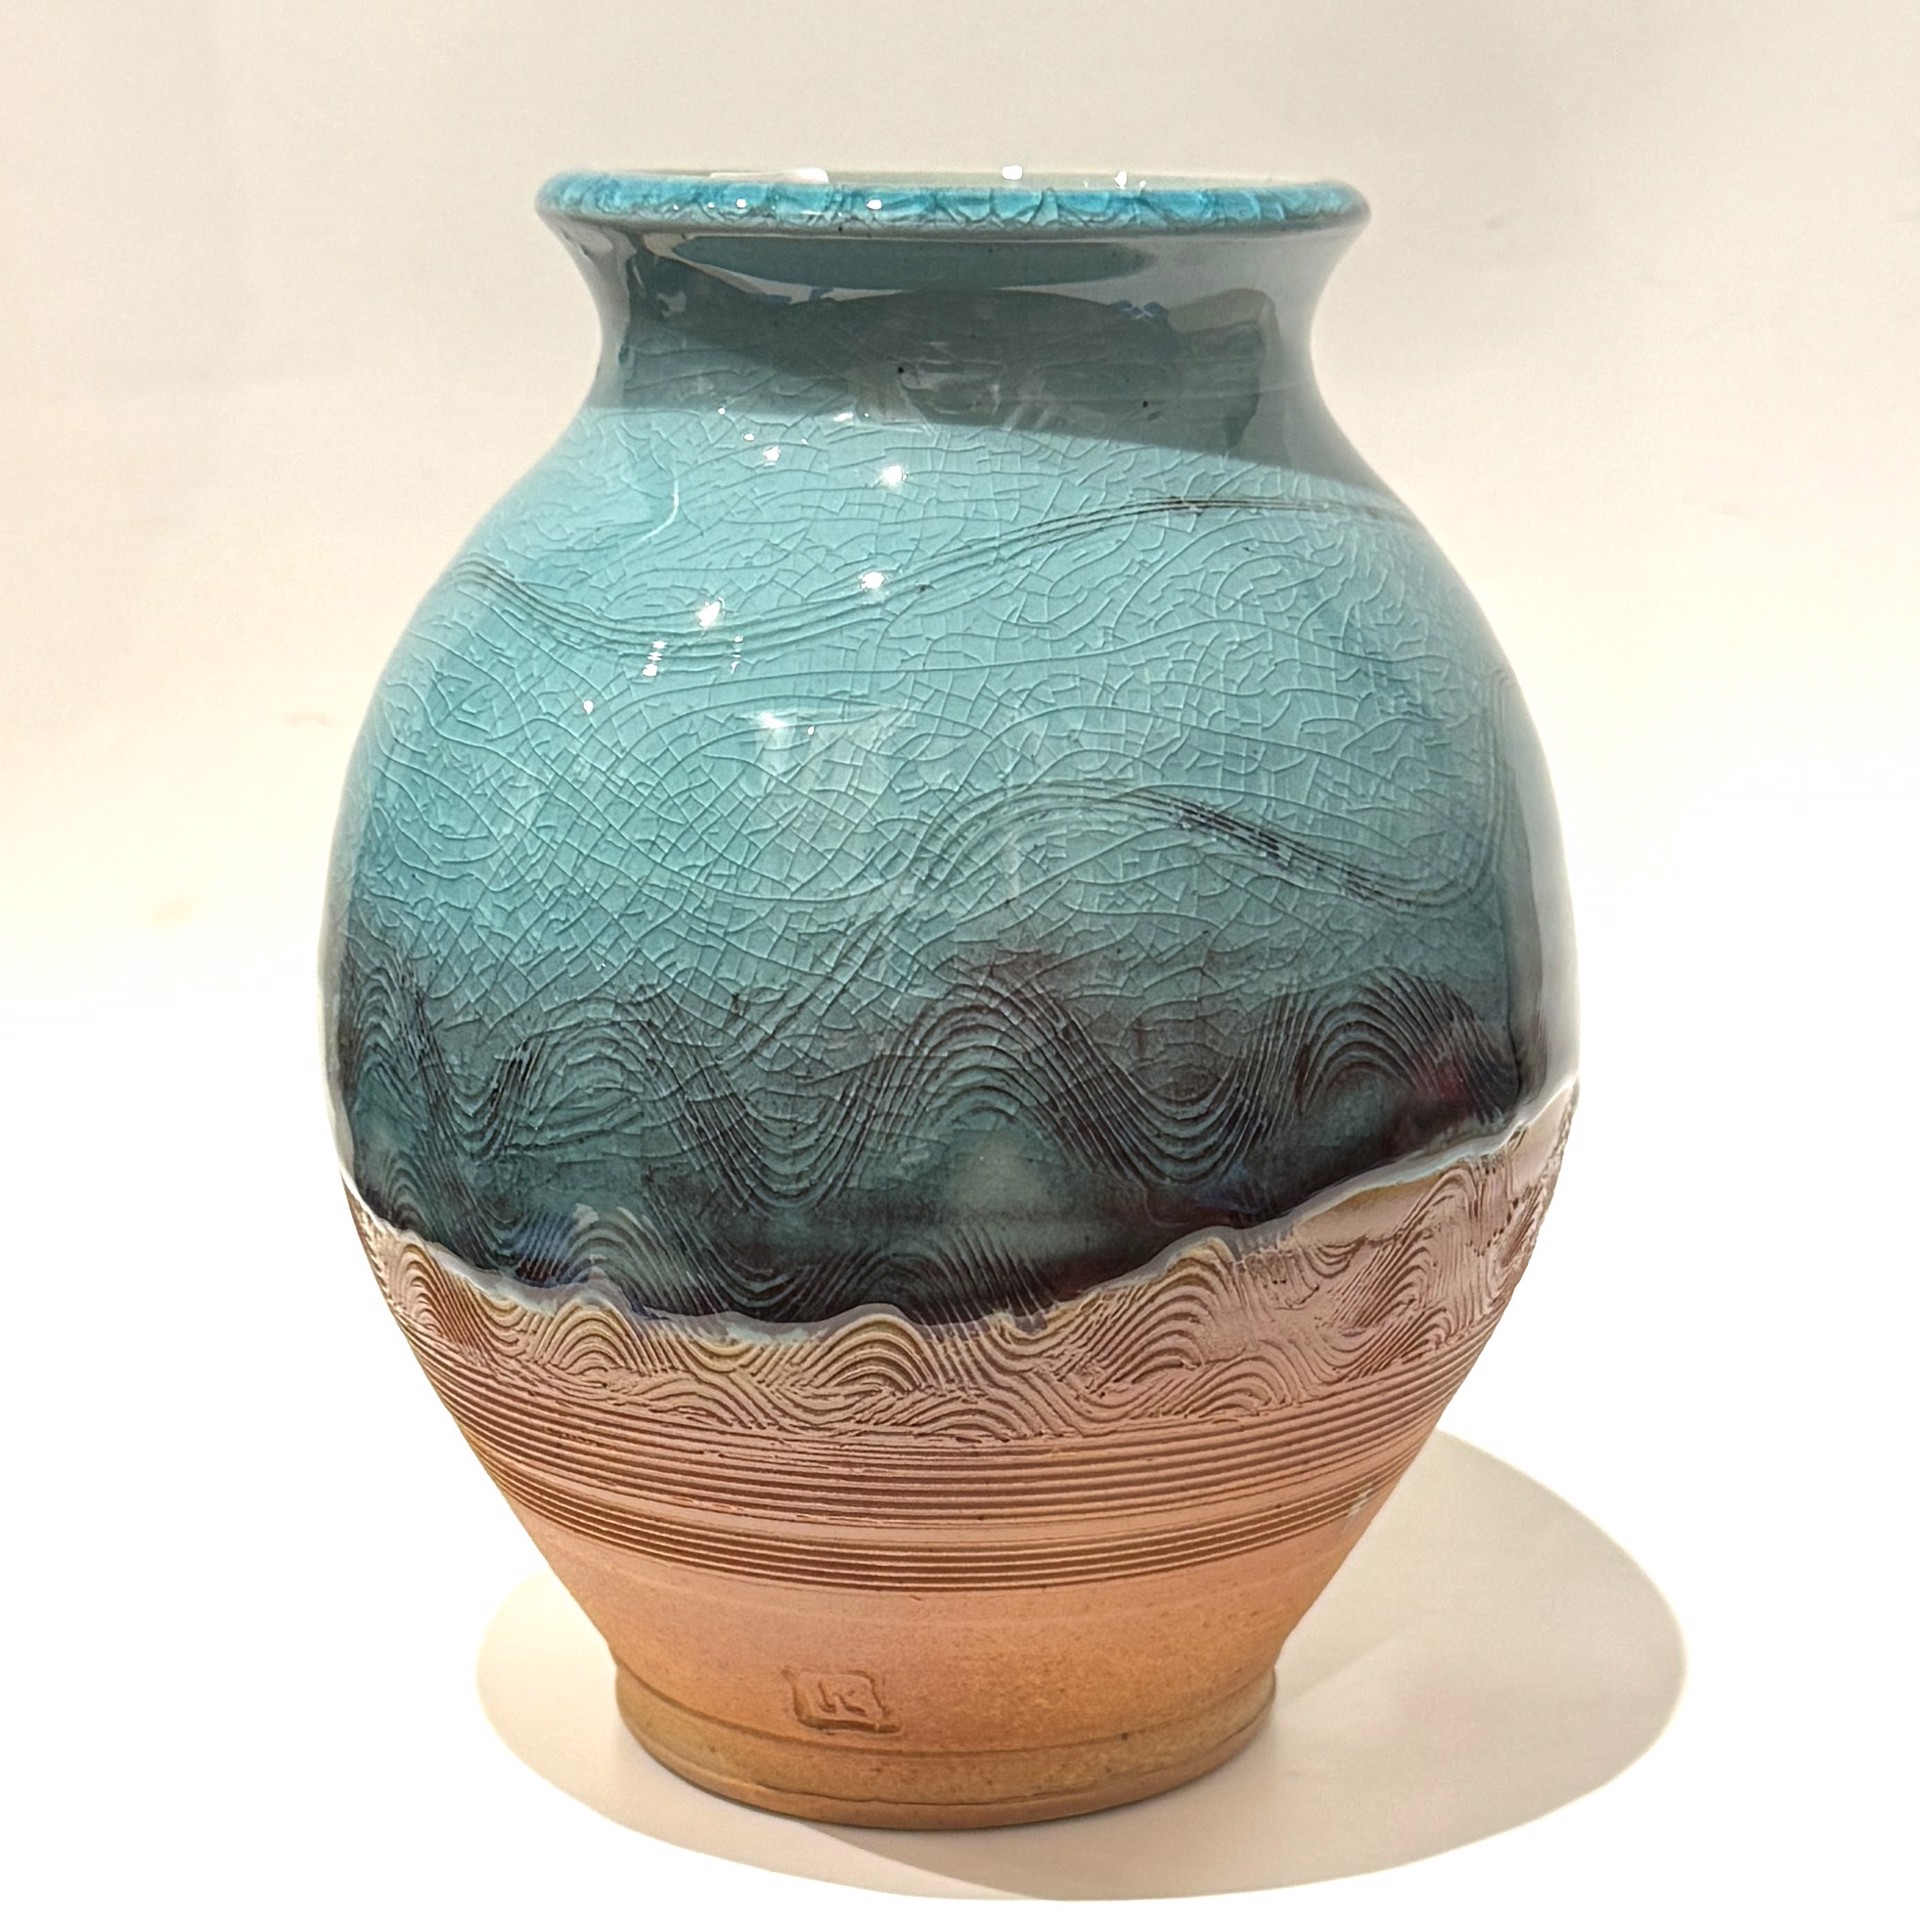 Medium Vase TH23-19 by Tierney Hall